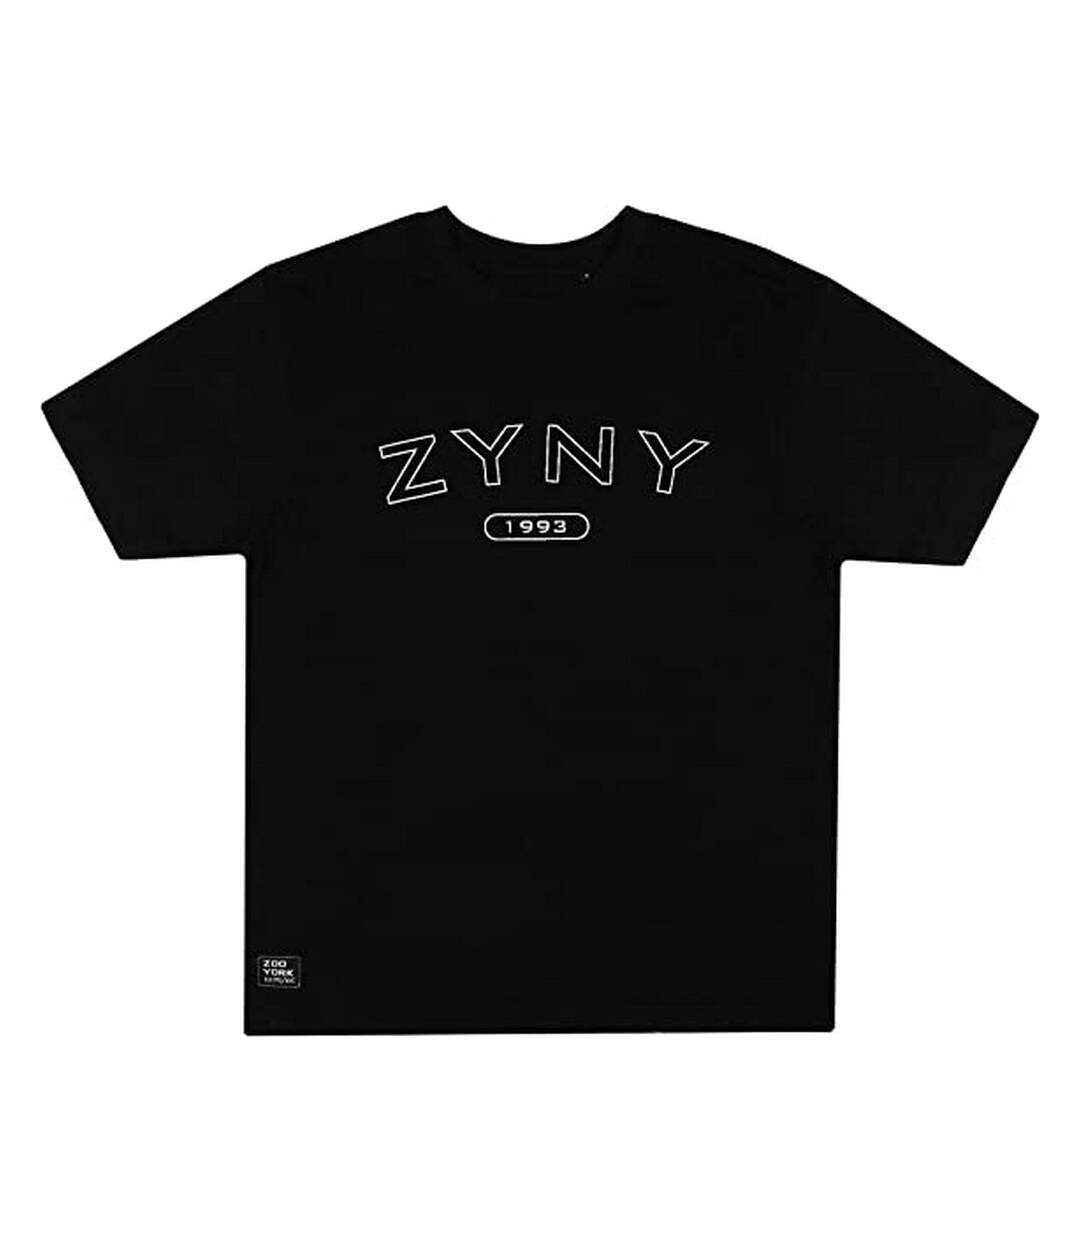 Zoo York - T-shirt ARCH BANK - Homme (Noir) - UTTV1532